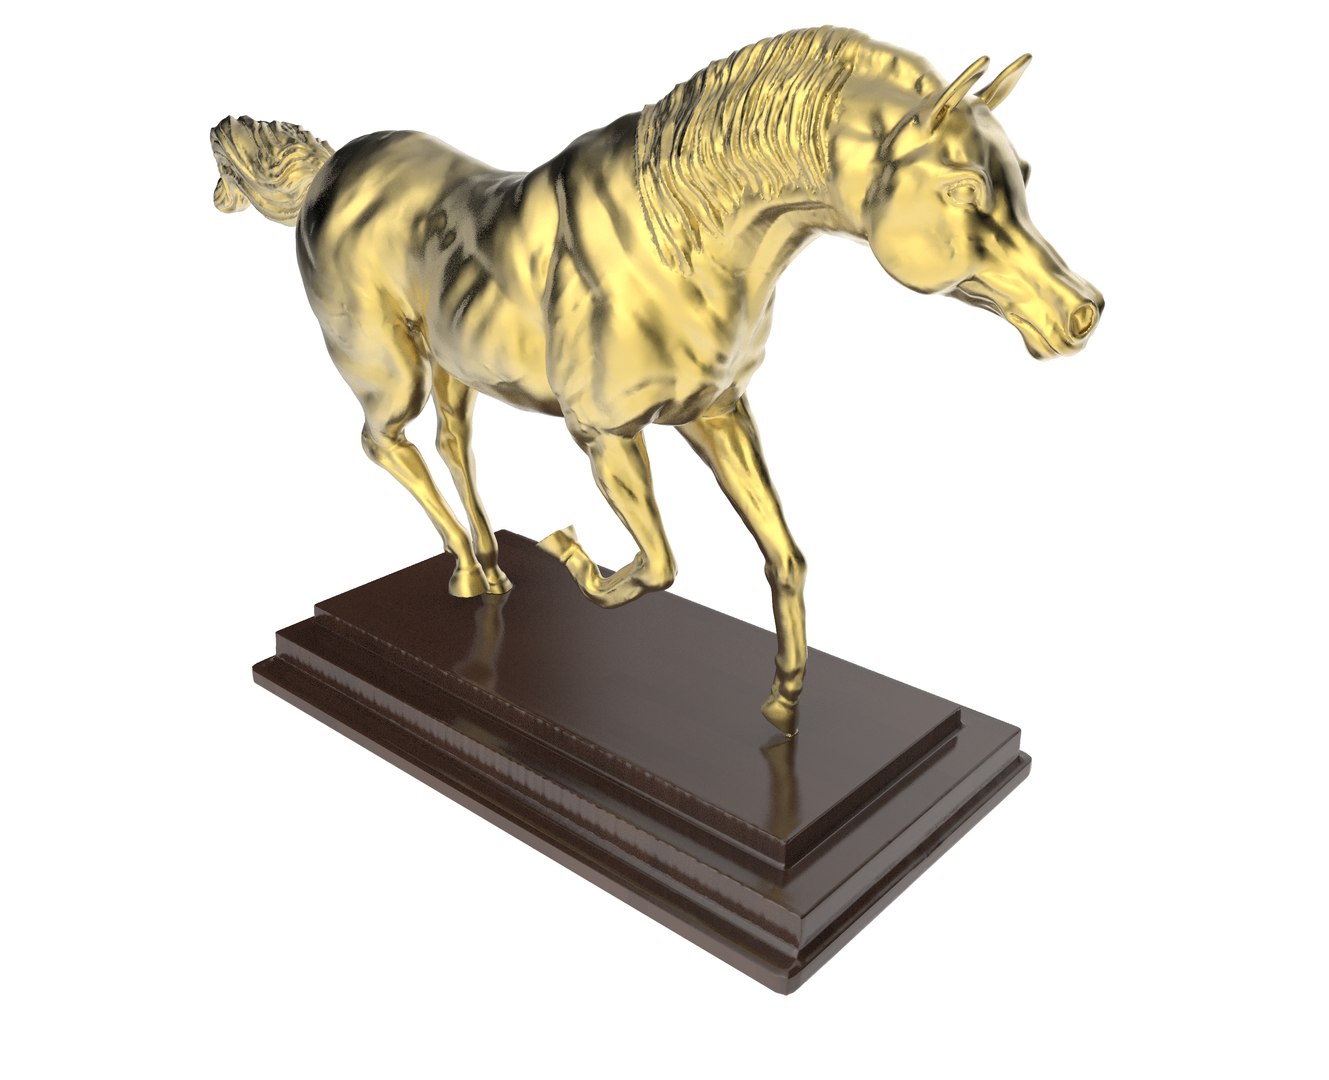 3d model of horse statue https://p.turbosquid.com/ts-thumb/ef/mo1Avv/GRAQ11QA/bla.164/png/1467639429/1920x1080/fit_q87/231fde7bcb59bfba2727786f60388dbd45e6da8e/bla.164.jpg